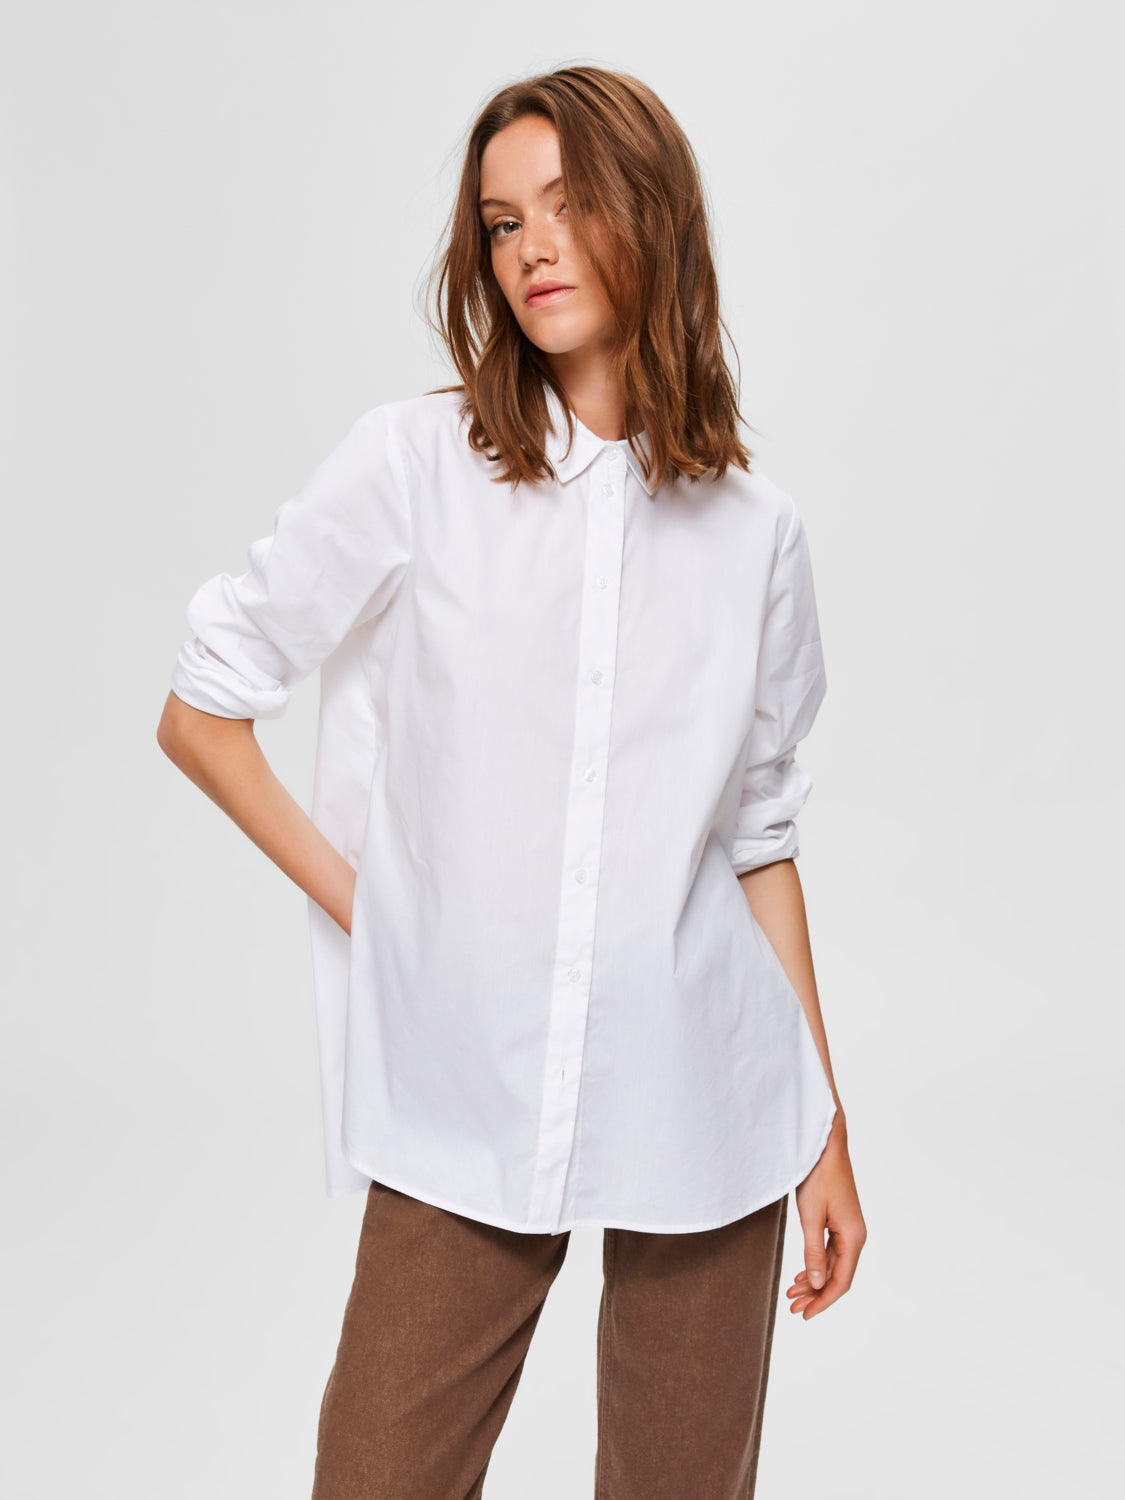 SLFORI Shirts - bright white